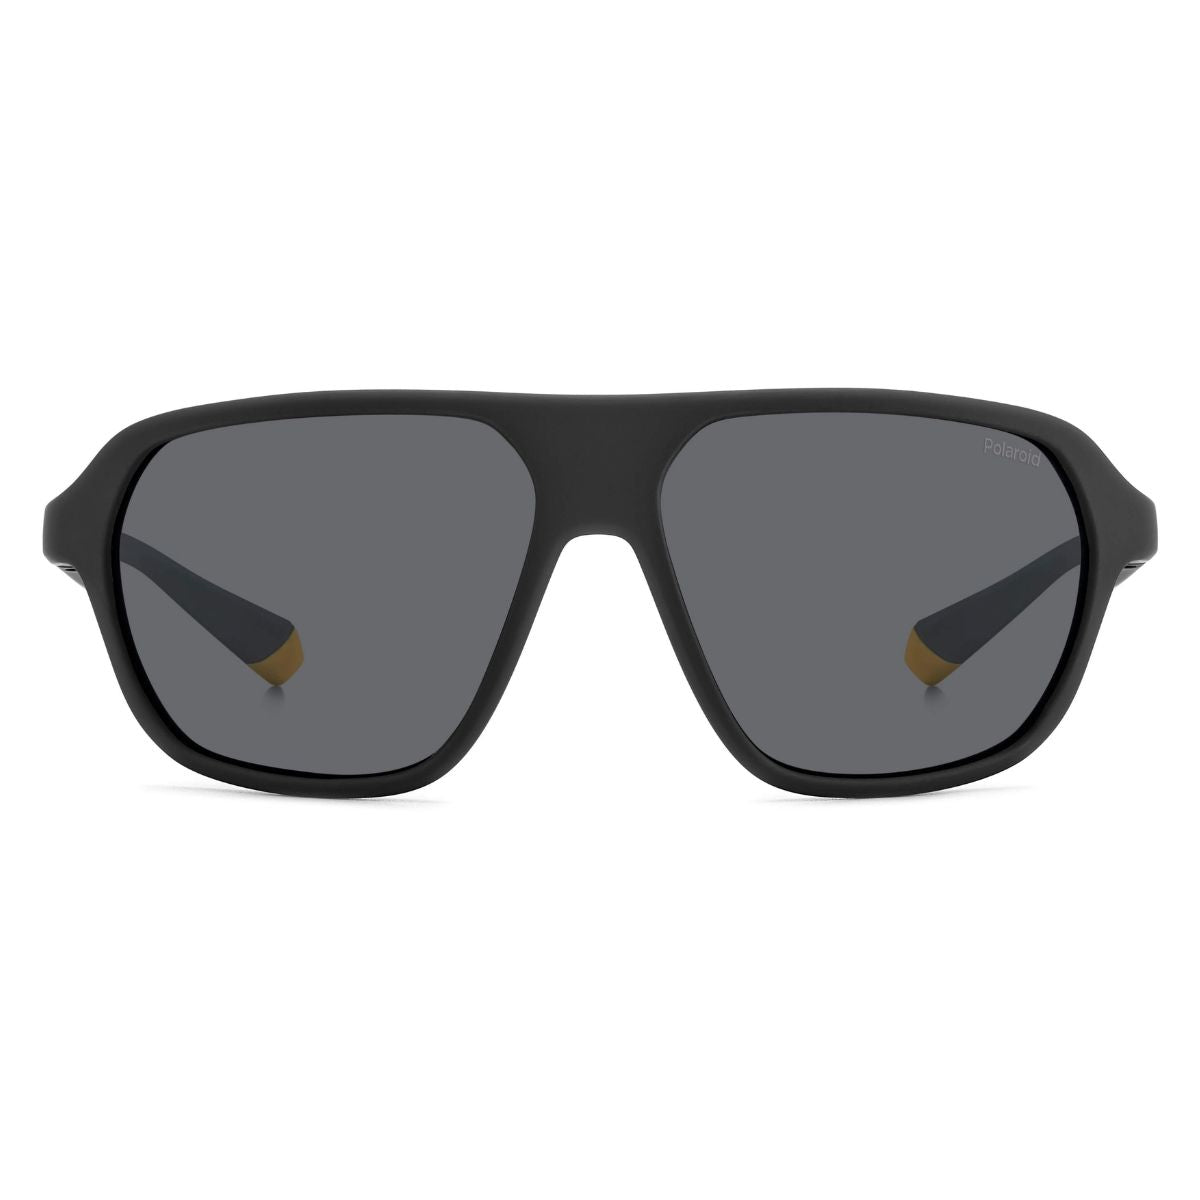 "Latest Polaroid 2152 Sunglasses For Men's & Women's At Optorium"